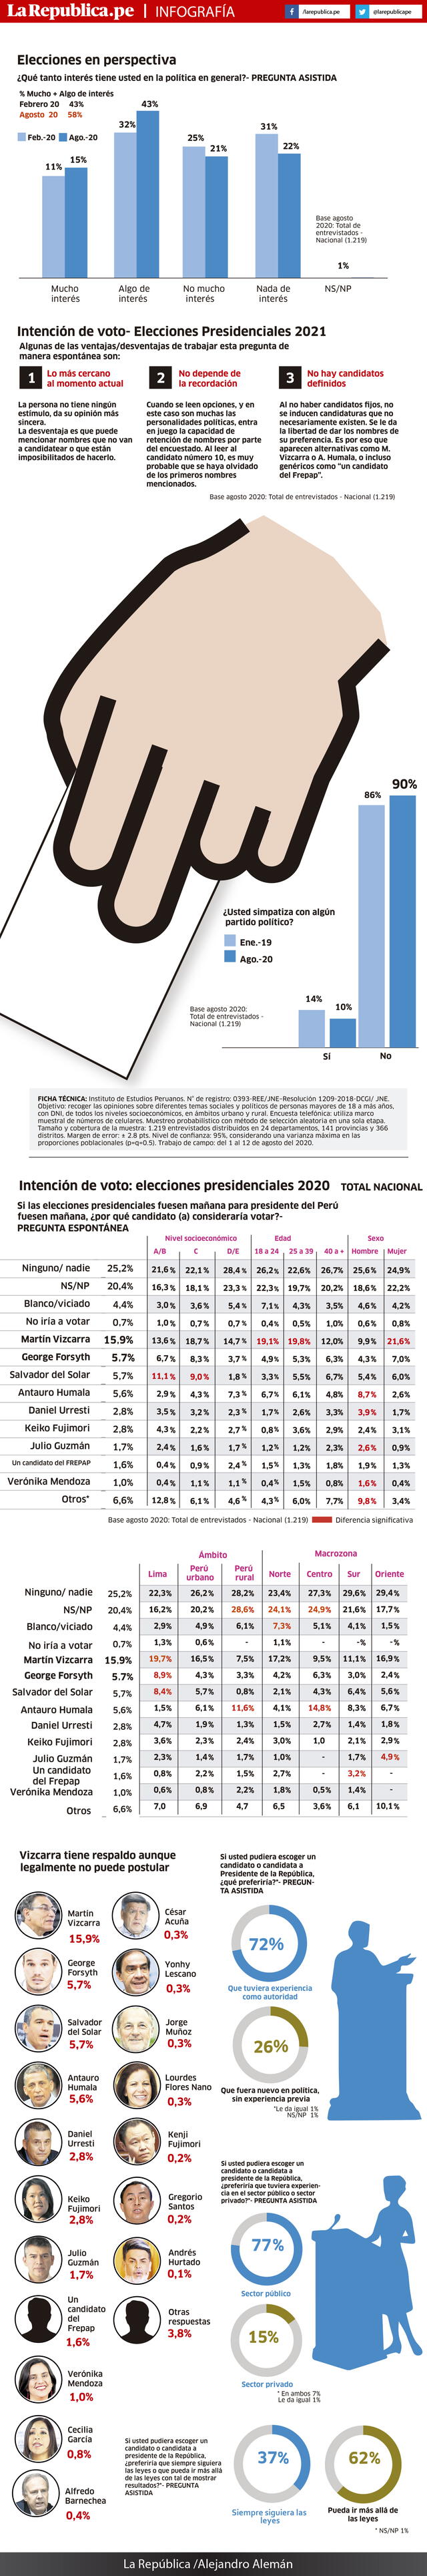 infografía elecciones 2021